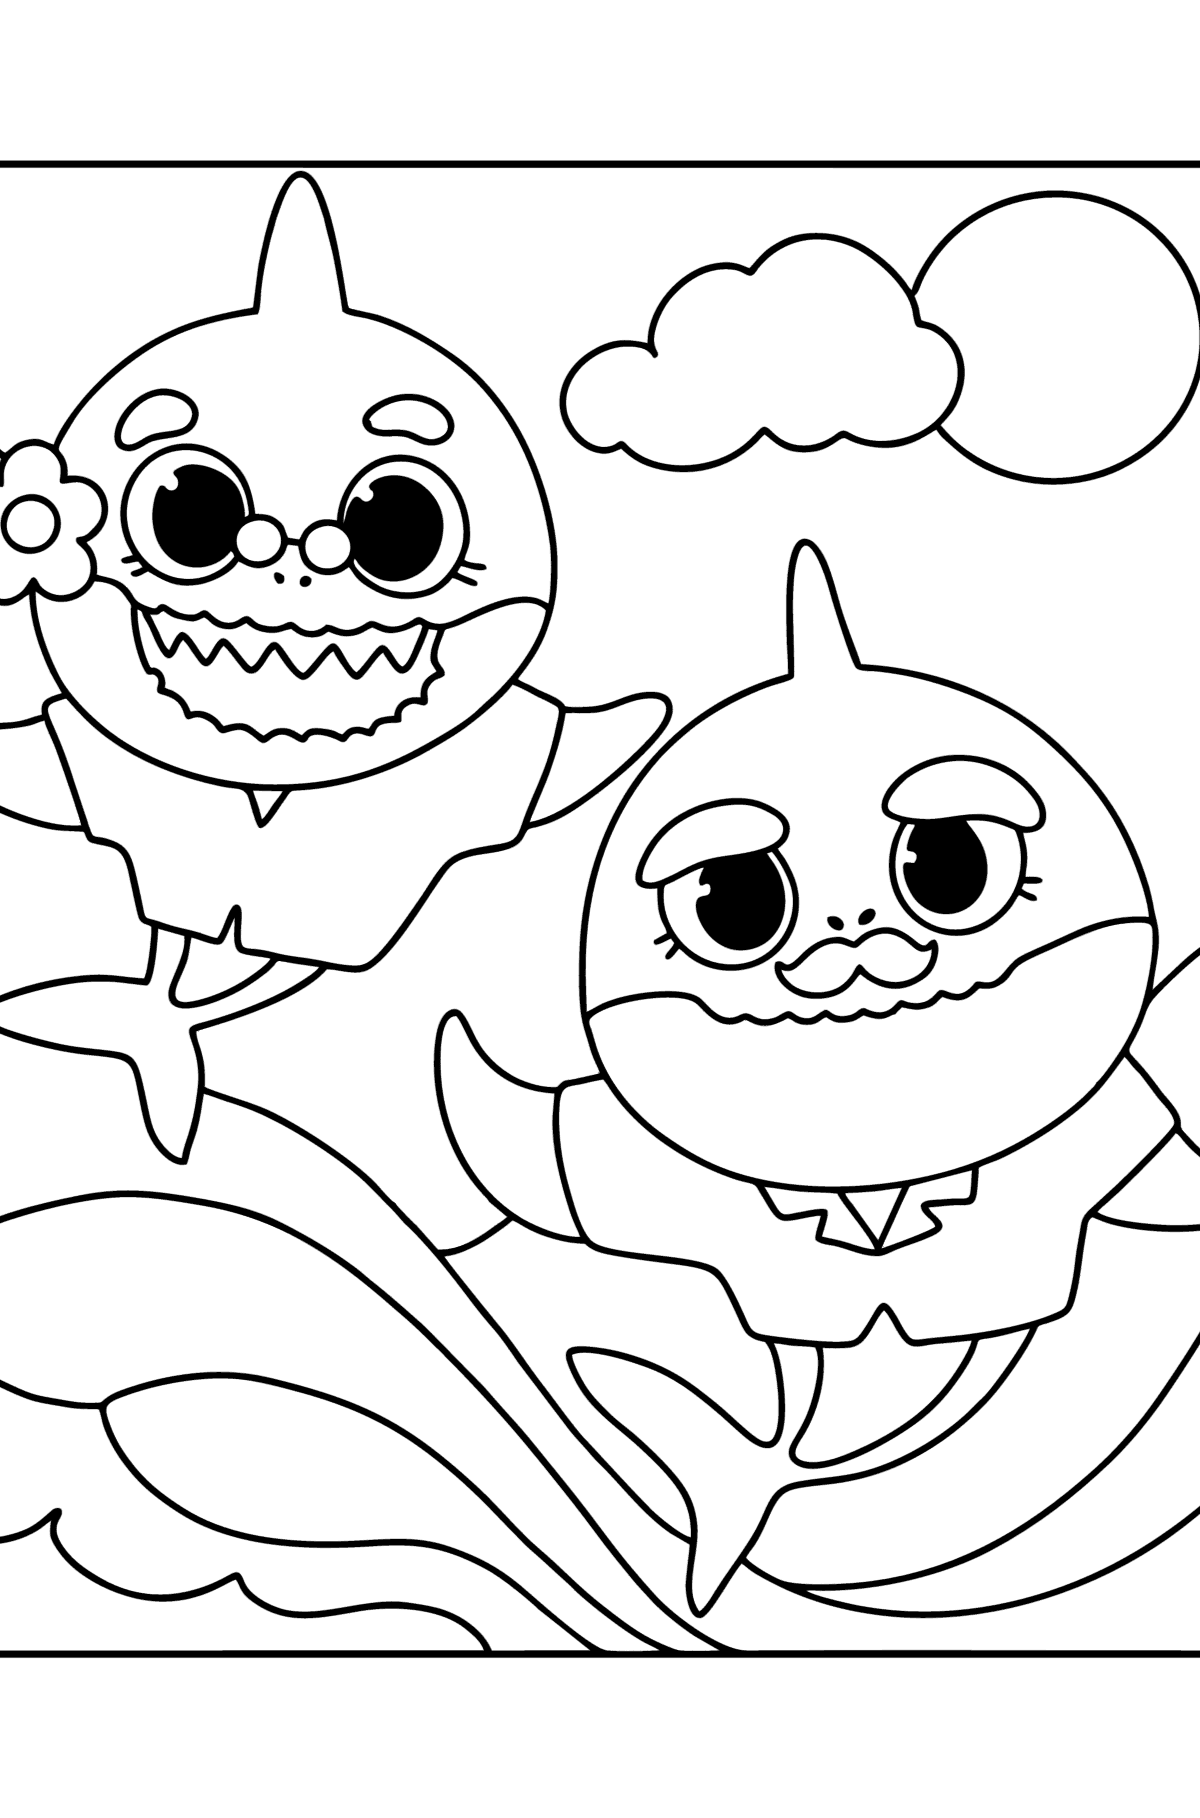 Desenho de Vovó e vovô Baby shark para colorir - Imagens para Colorir para Crianças